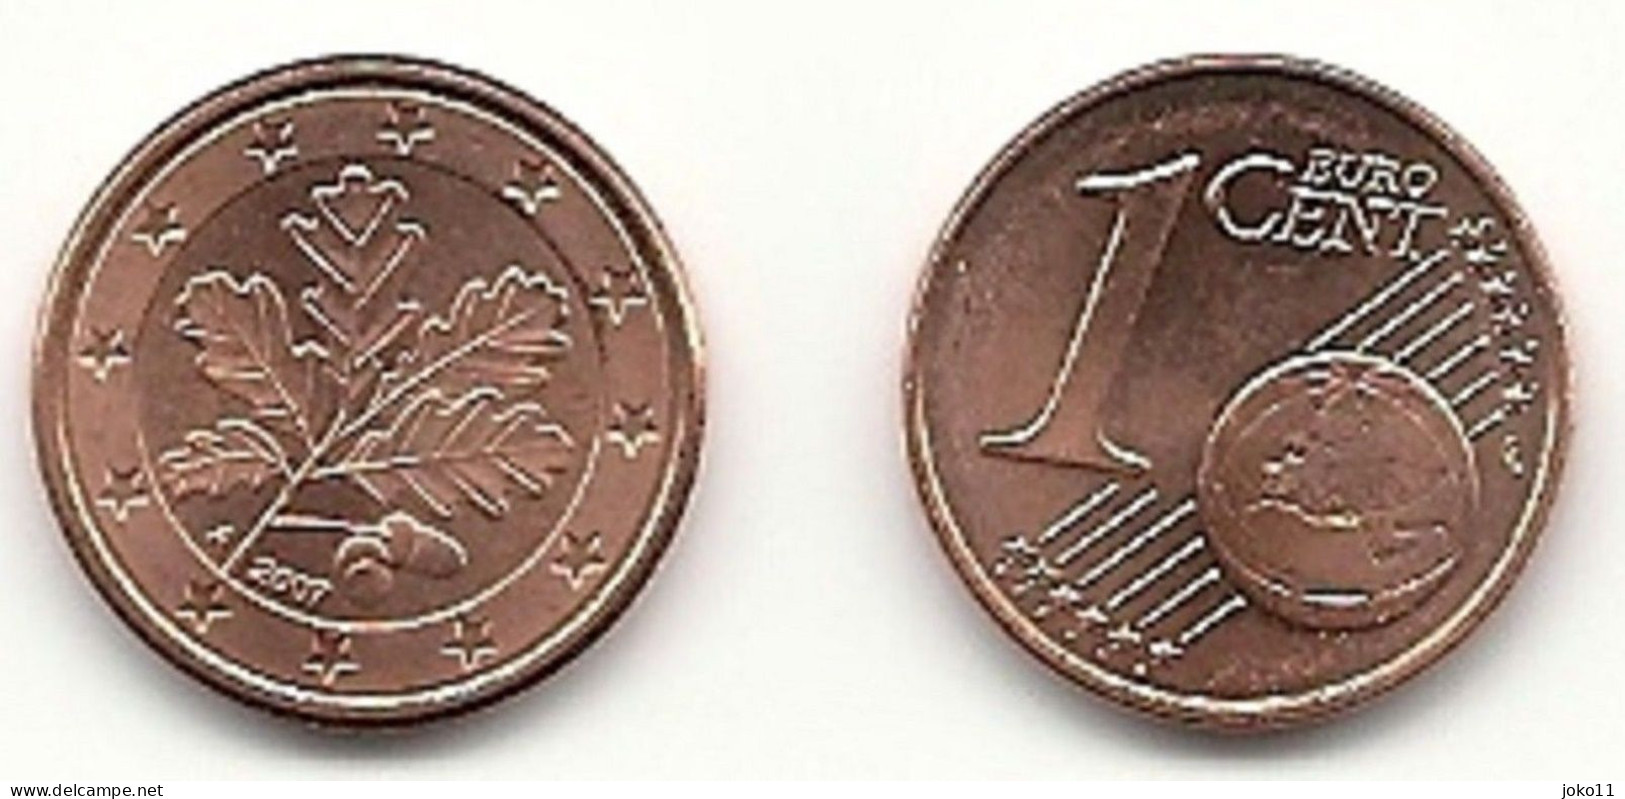 1 Cent, 2007 Prägestätte (A) Vz, Sehr Gut Erhaltene Umlaufmünze - Germany